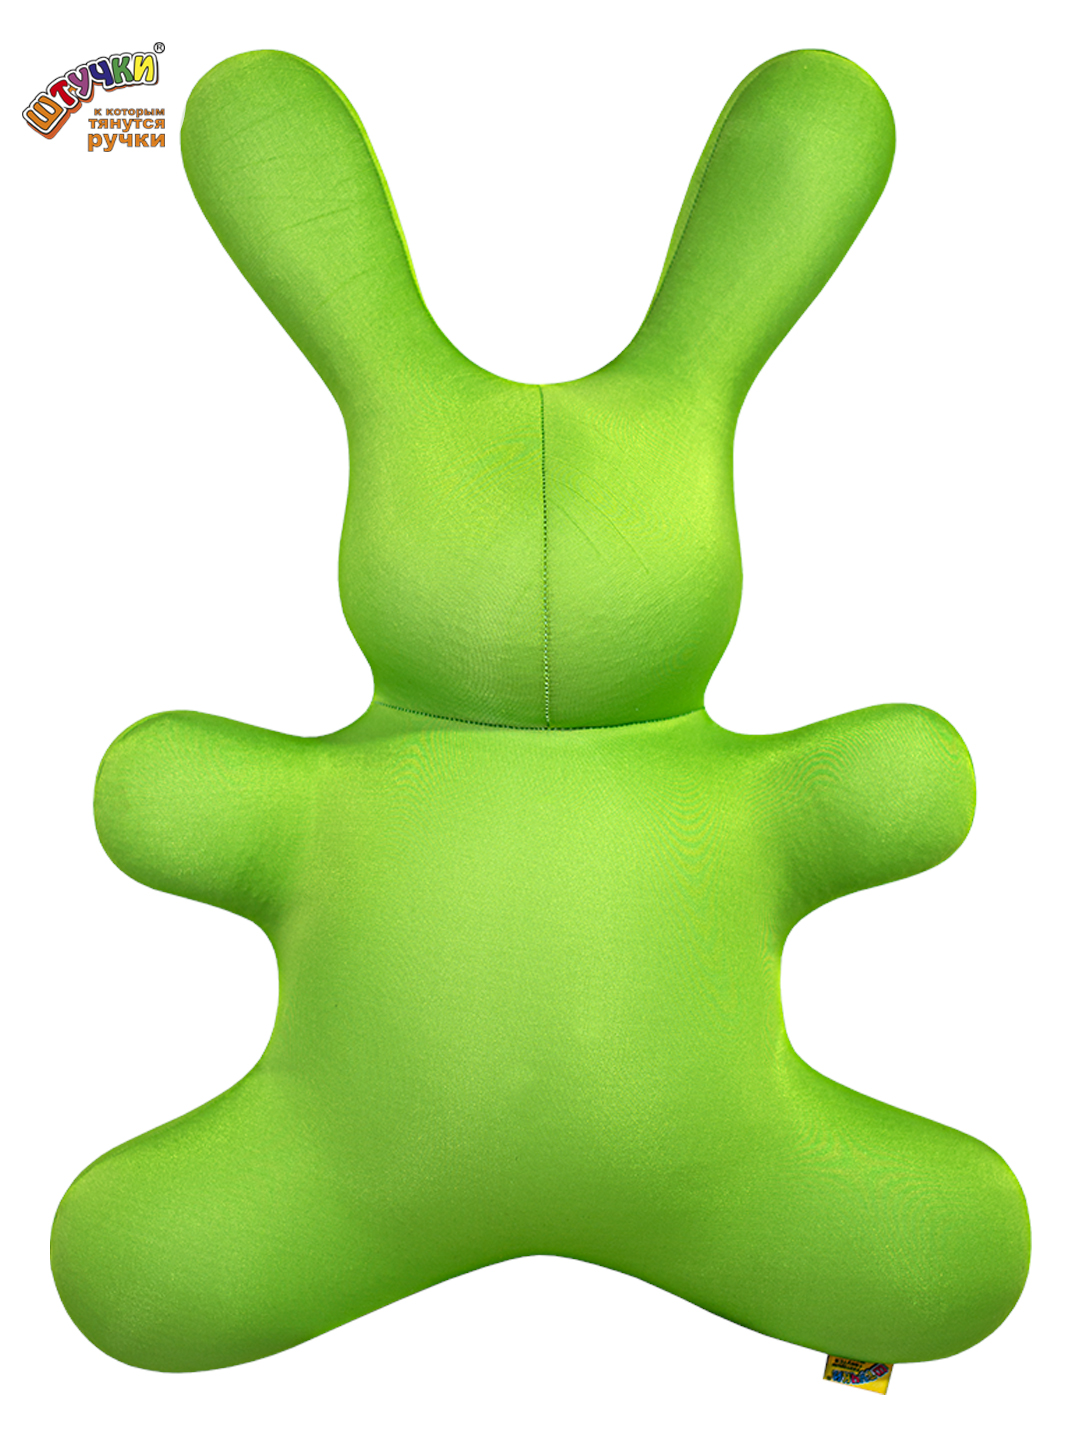 Игрушка антистресс Штучки, к которым тянутся ручки Заяц однотон, зеленый